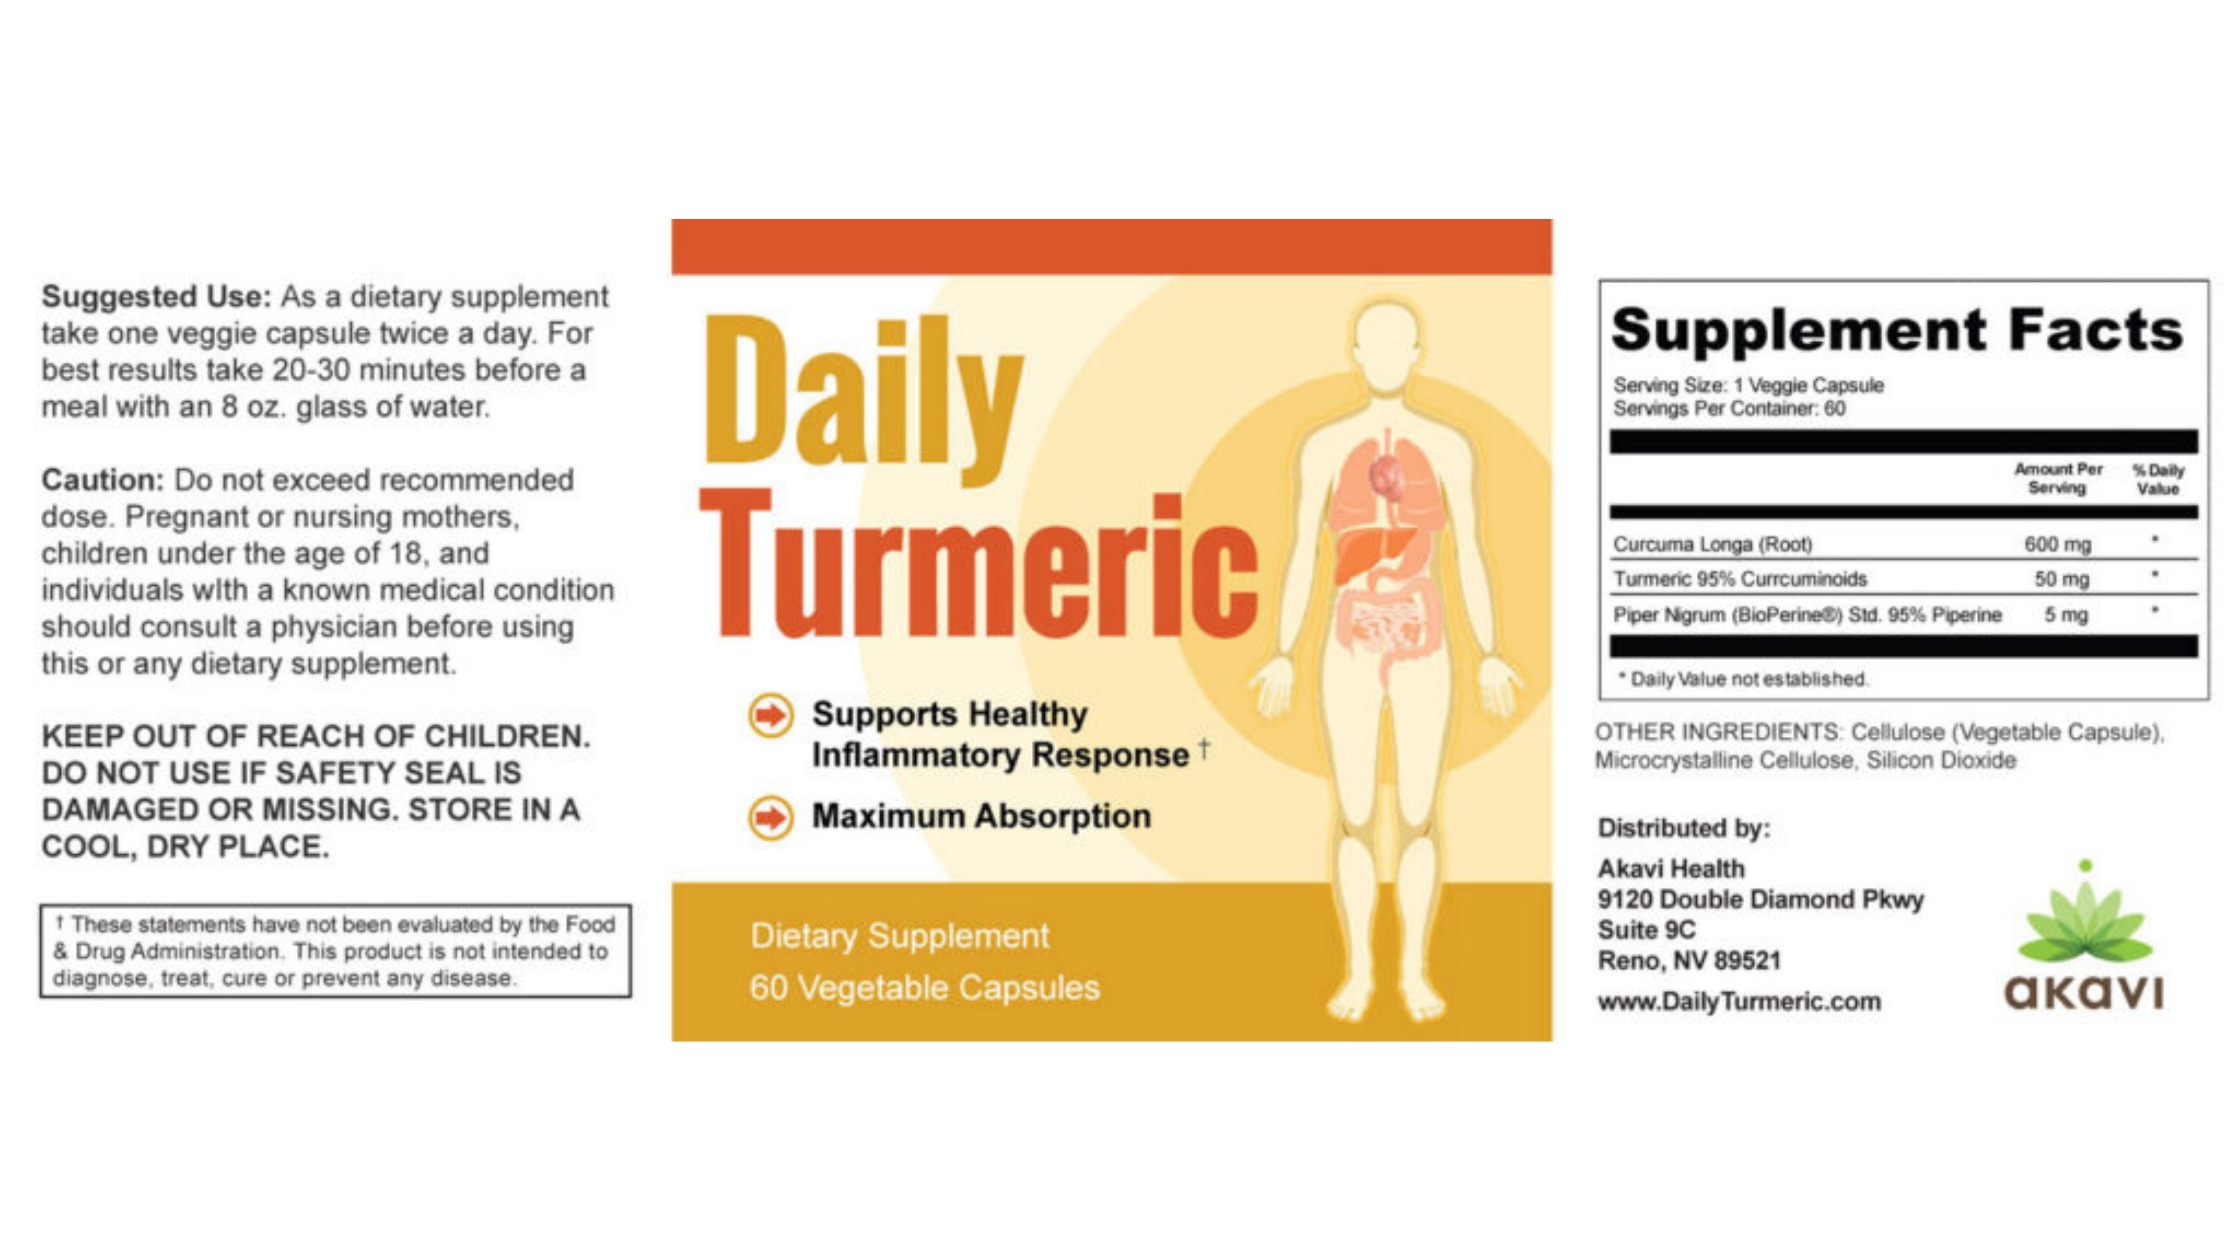 Daily Turmeric Dosage & Usage